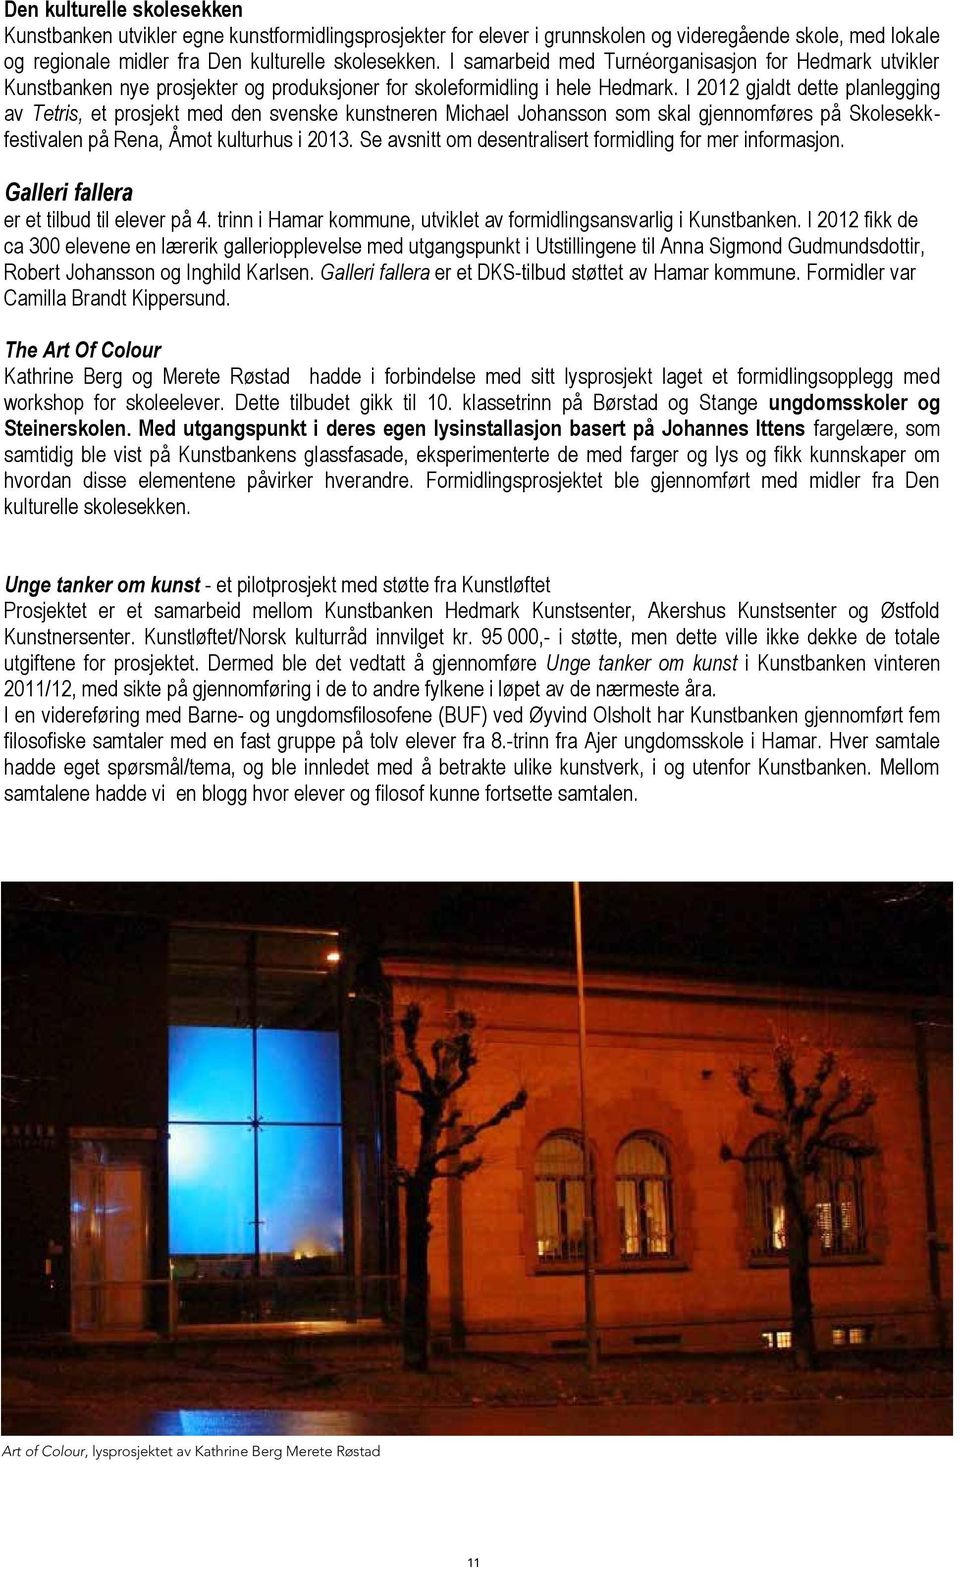 I 2012 gjaldt dette planlegging av Tetris, et prosjekt med den svenske kunstneren Michael Johansson som skal gjennomføres på Skolesekkfestivalen på Rena, Åmot kulturhus i 2013.